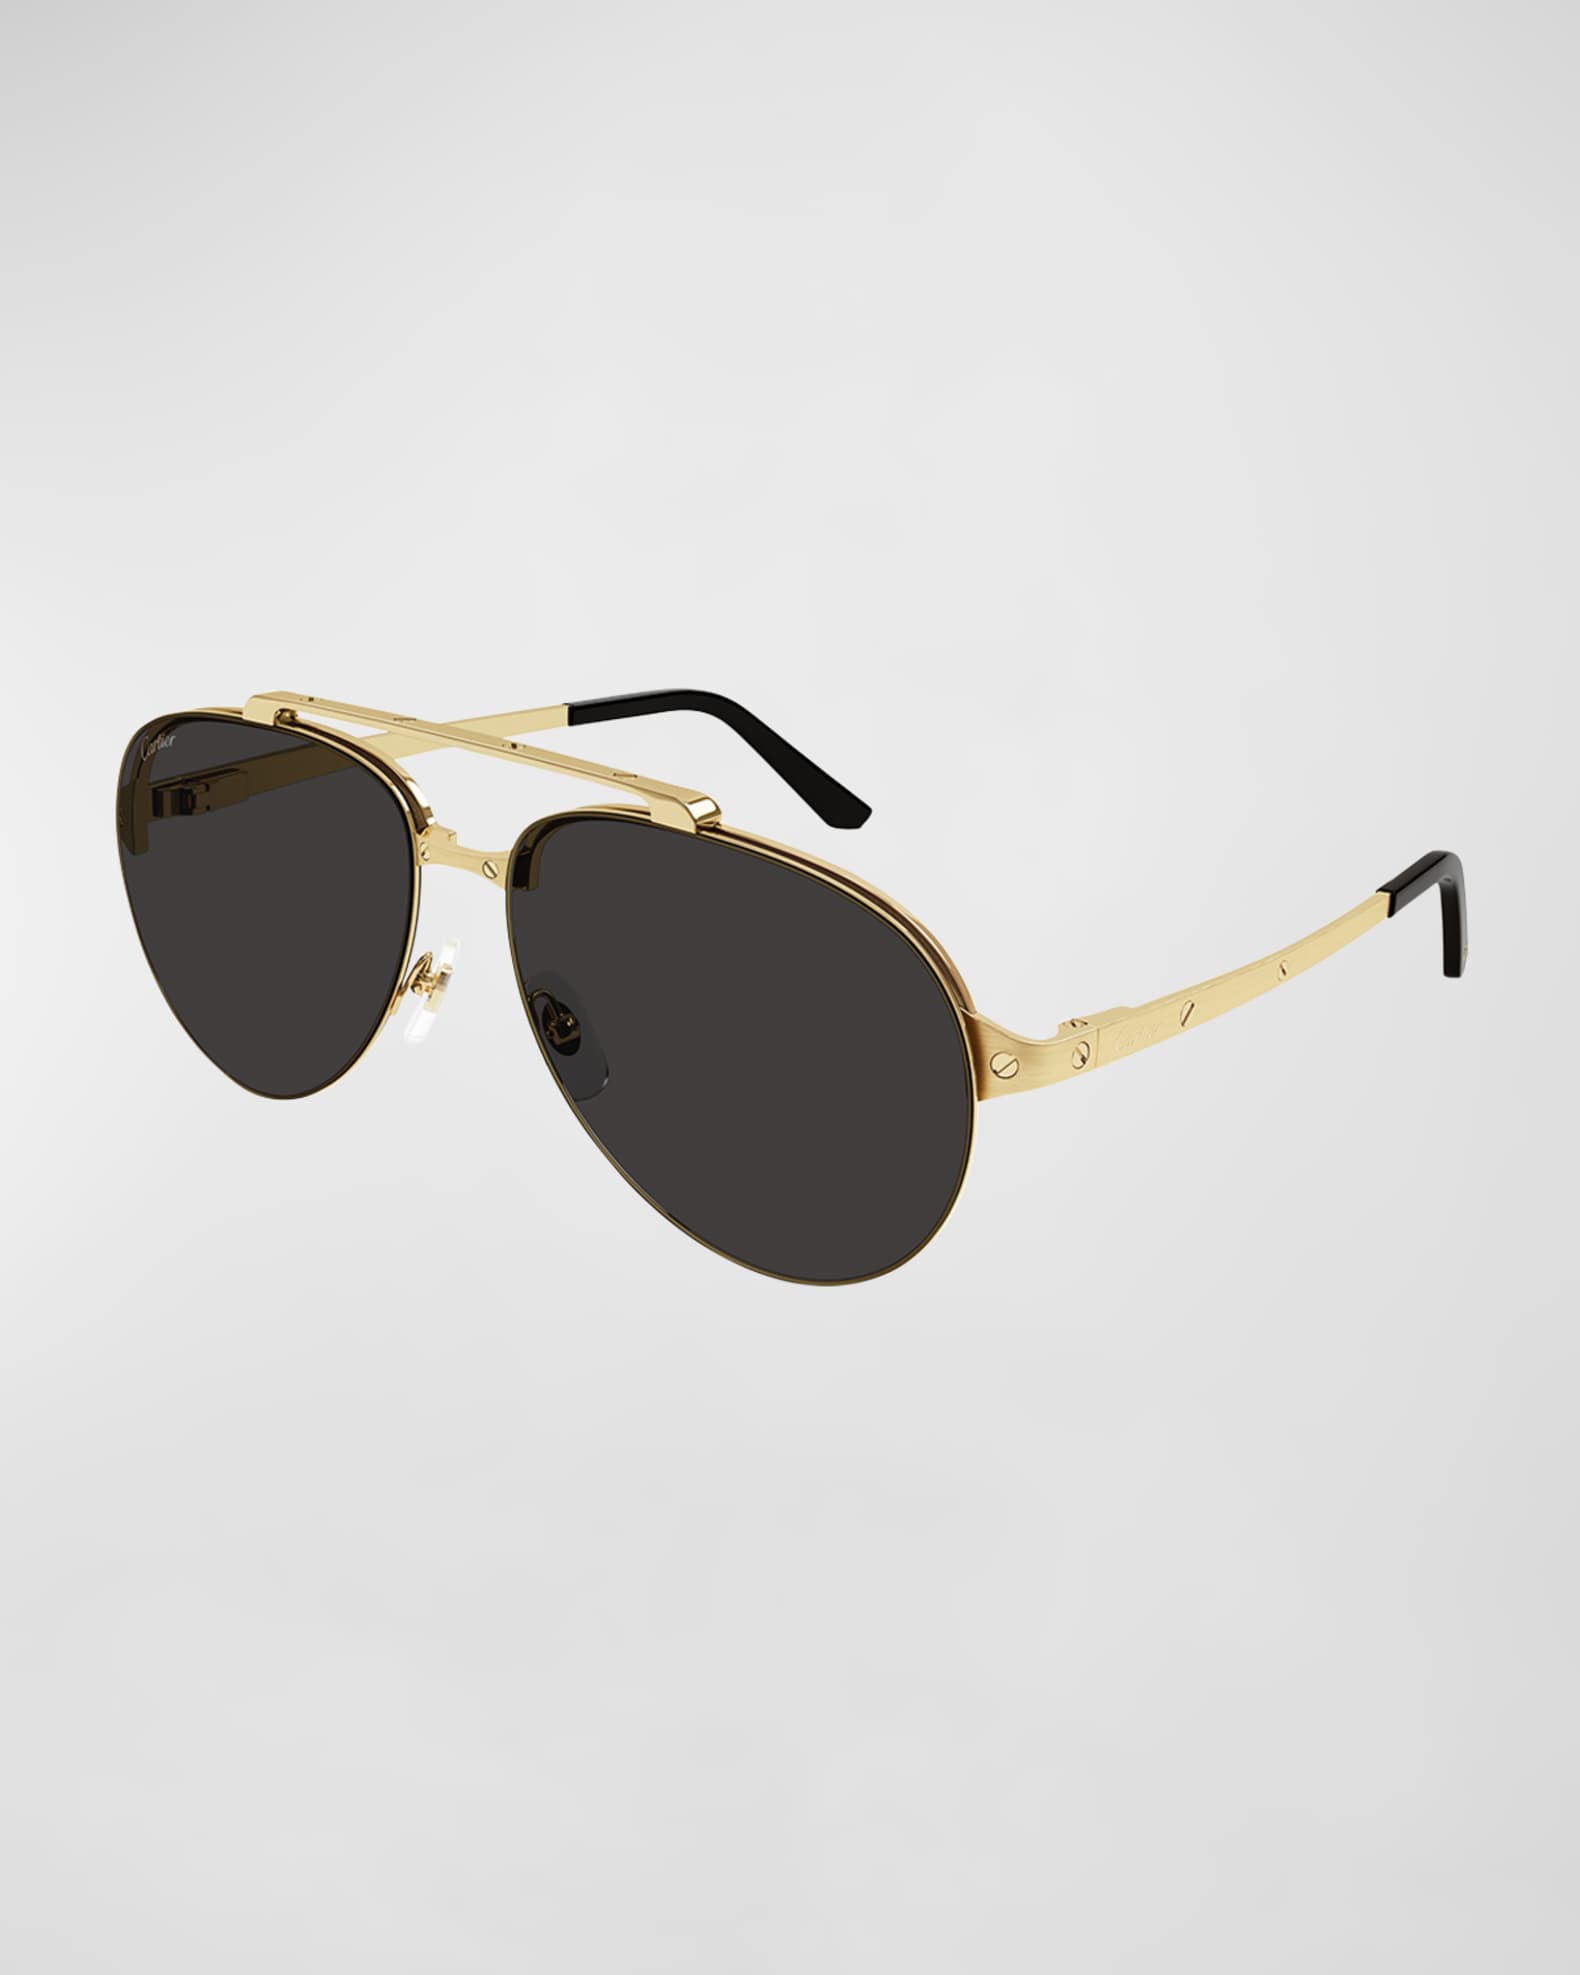 Cartier Men's Double-Bridge Metal Aviator Sunglasses | Neiman Marcus